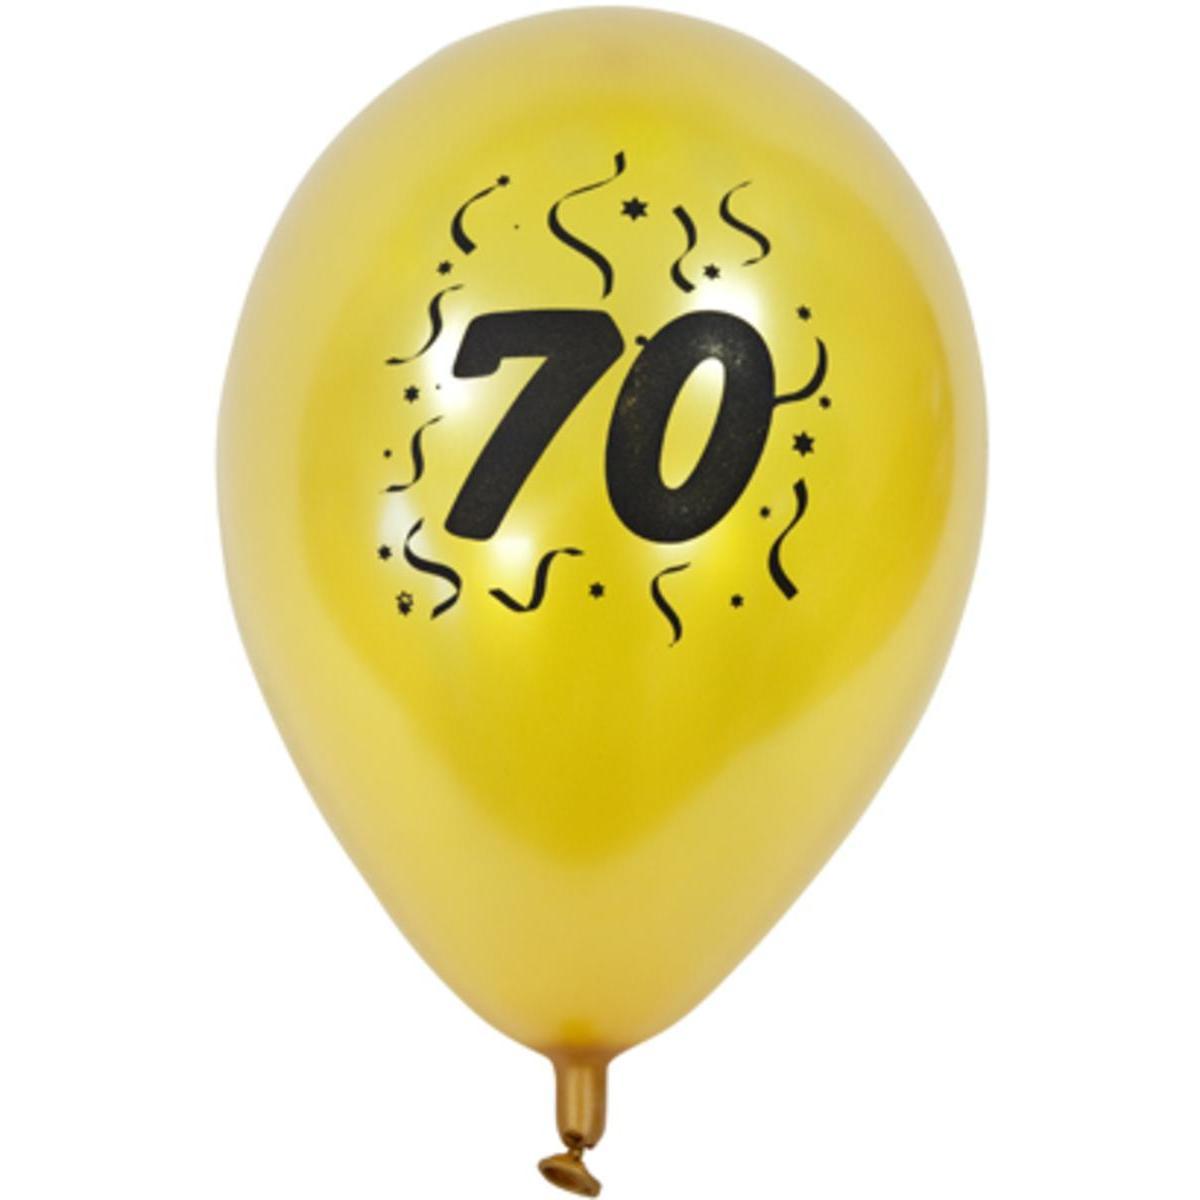 Ballons nacrés imprimés 70 ans (x 8) - 28 x 28 cm - Or